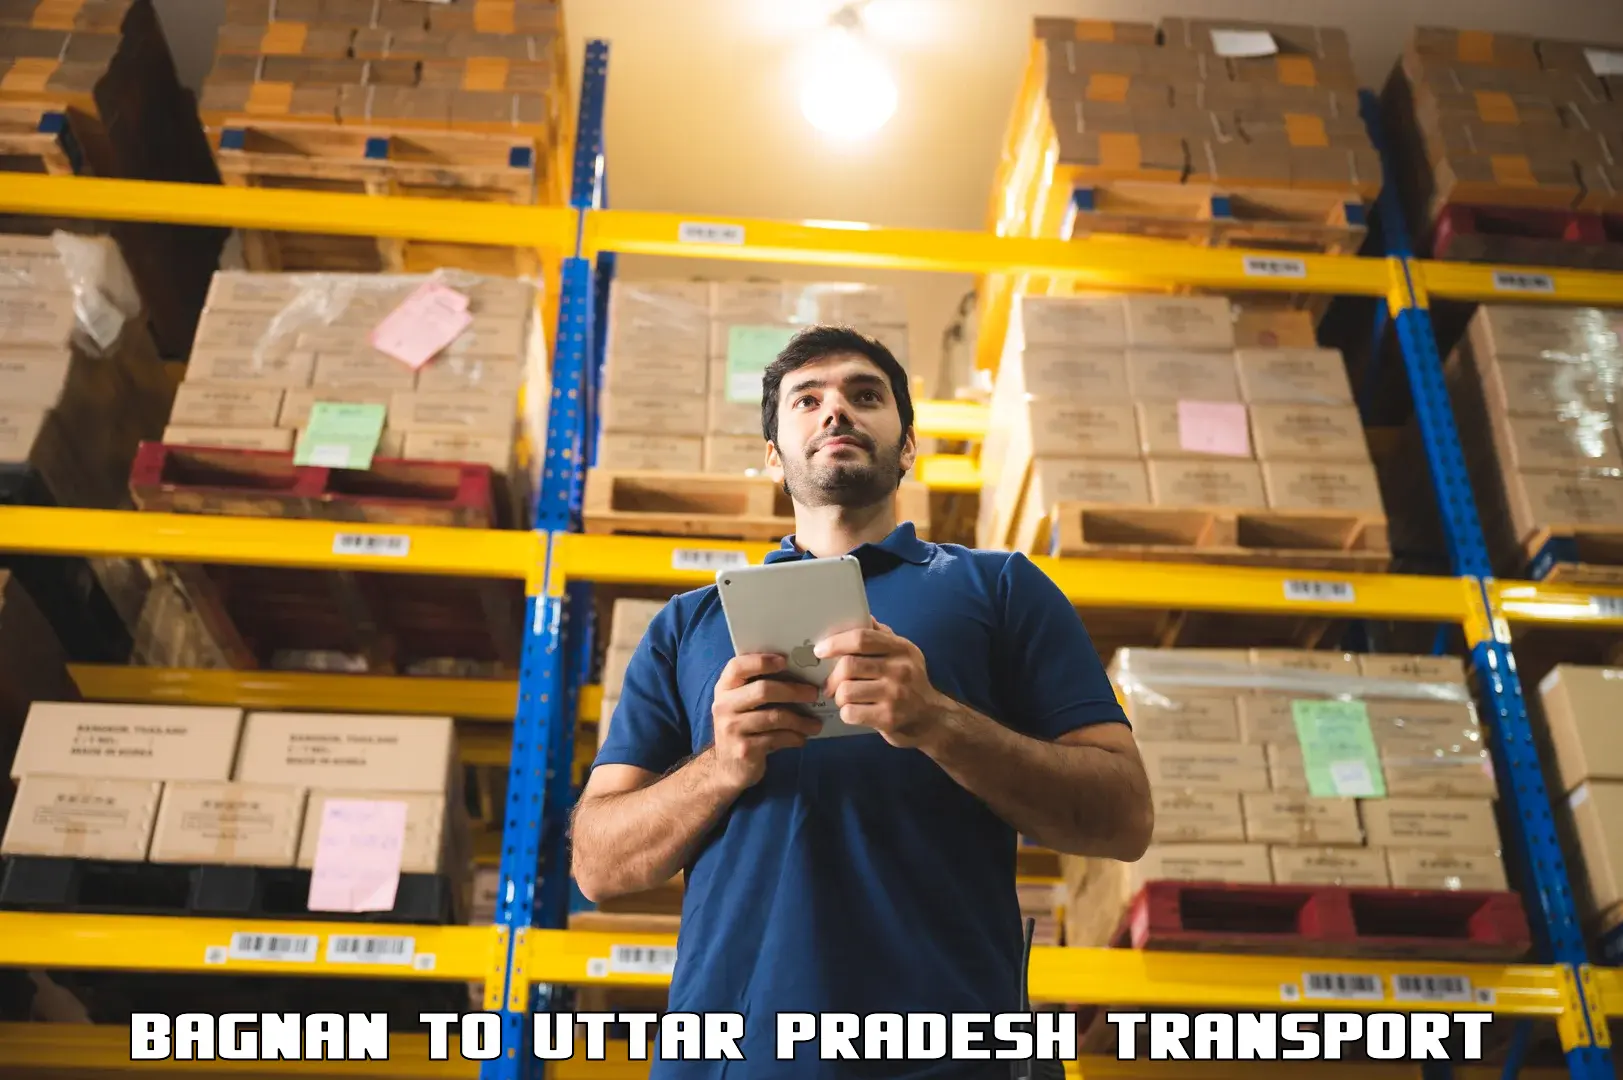 Commercial transport service Bagnan to Uttar Pradesh